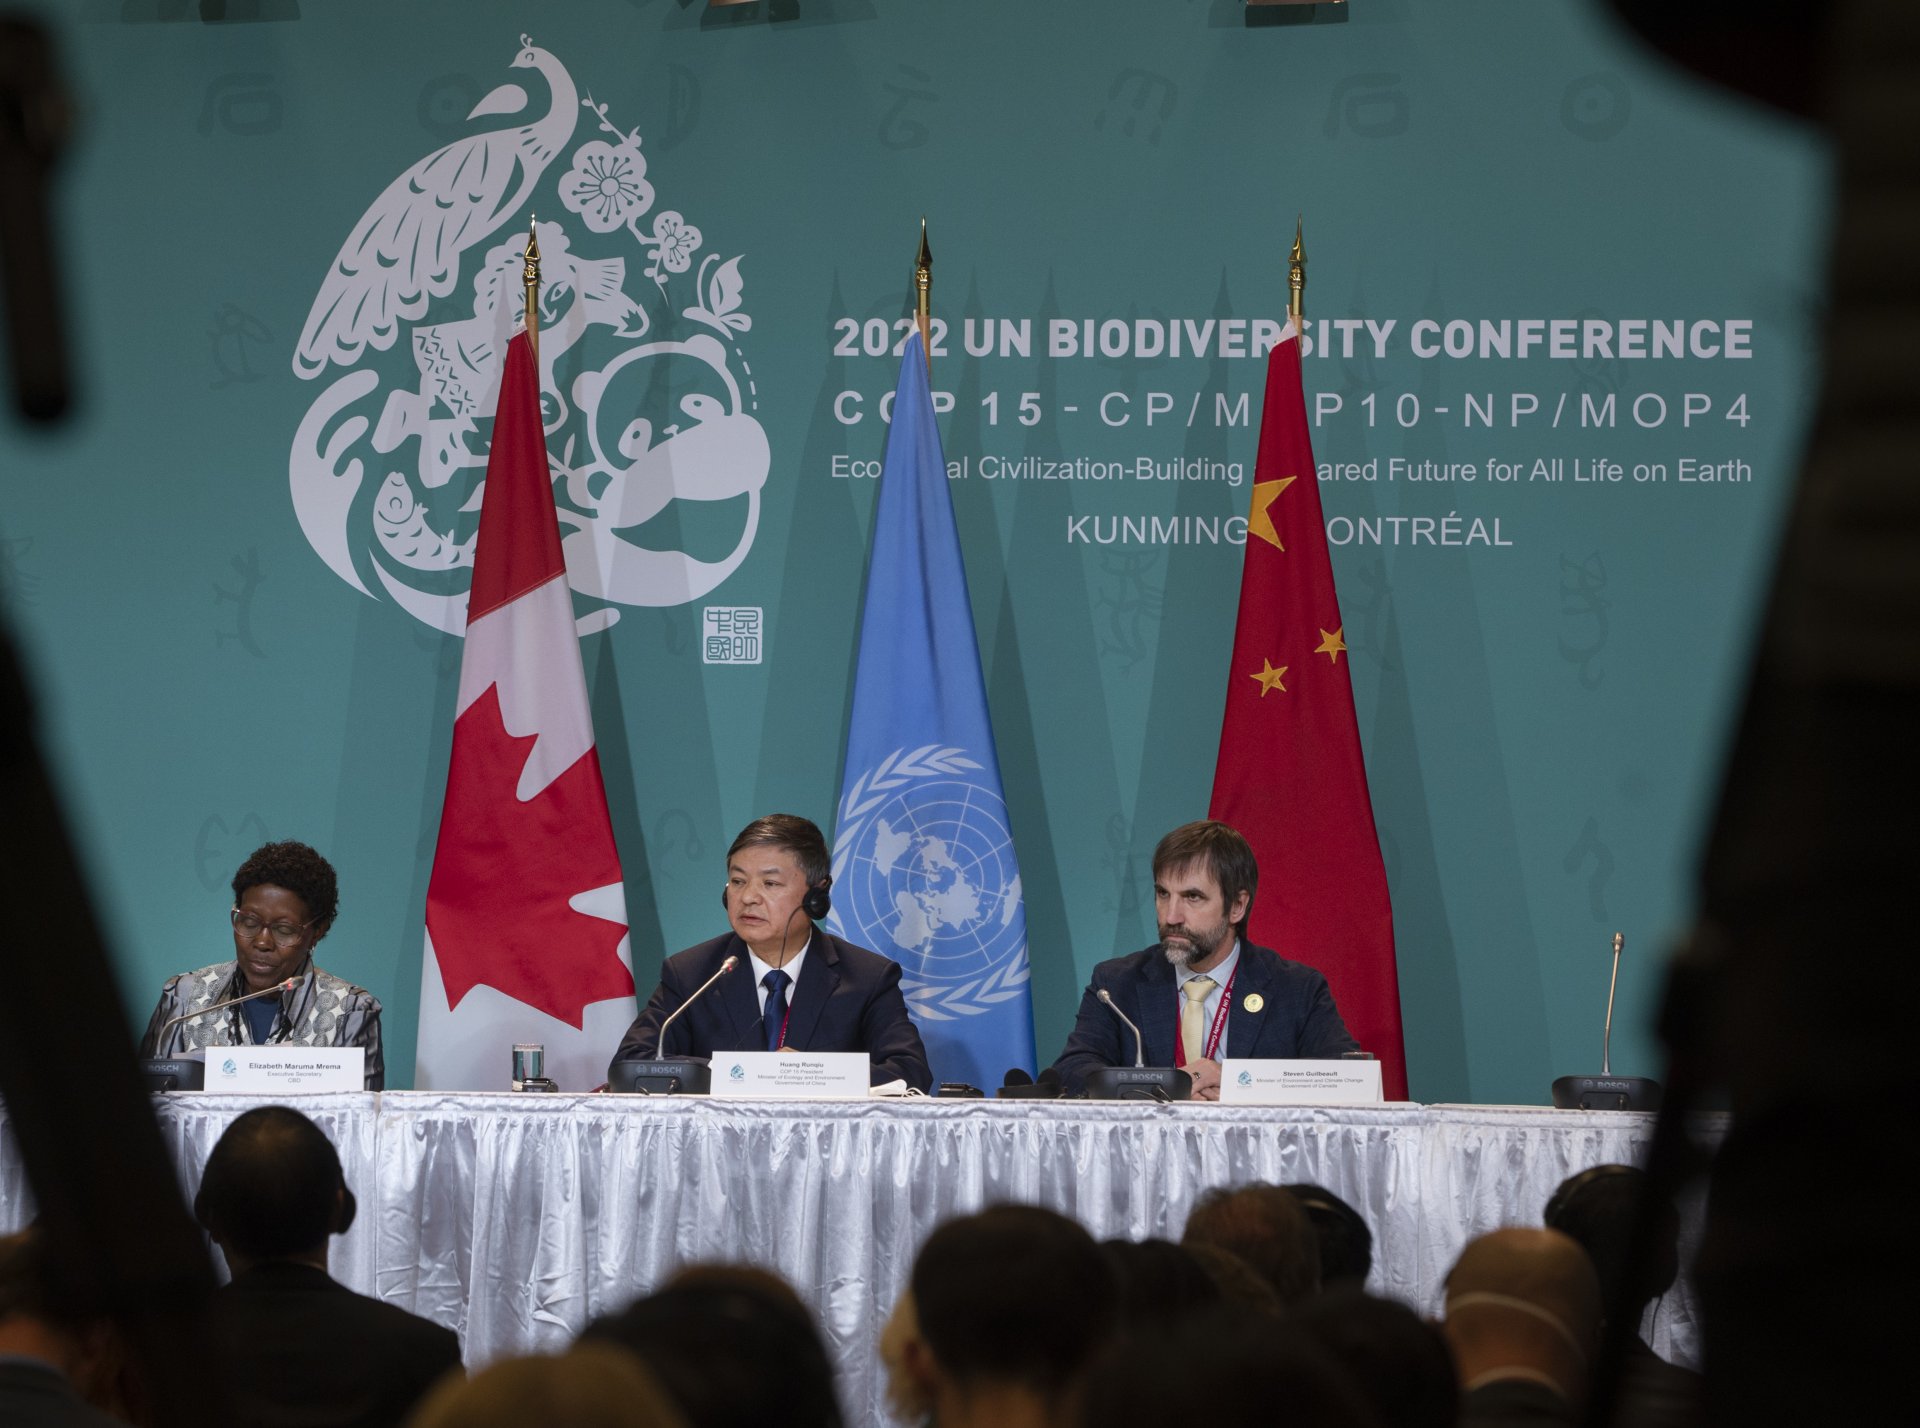  Елизабет Марума Мрема - изпълнителен секретар на секретариата на Конференцията по биологично многообразие, и Хуанг Рункиу - президент на COP 15 и министър на екологията и околната среда на Китай, слушат Стивън Гилбо, министър на околната среда и изменението на климата на Канада, по време на конференция на срещата на високо ниво COP 15 в Монреал. 